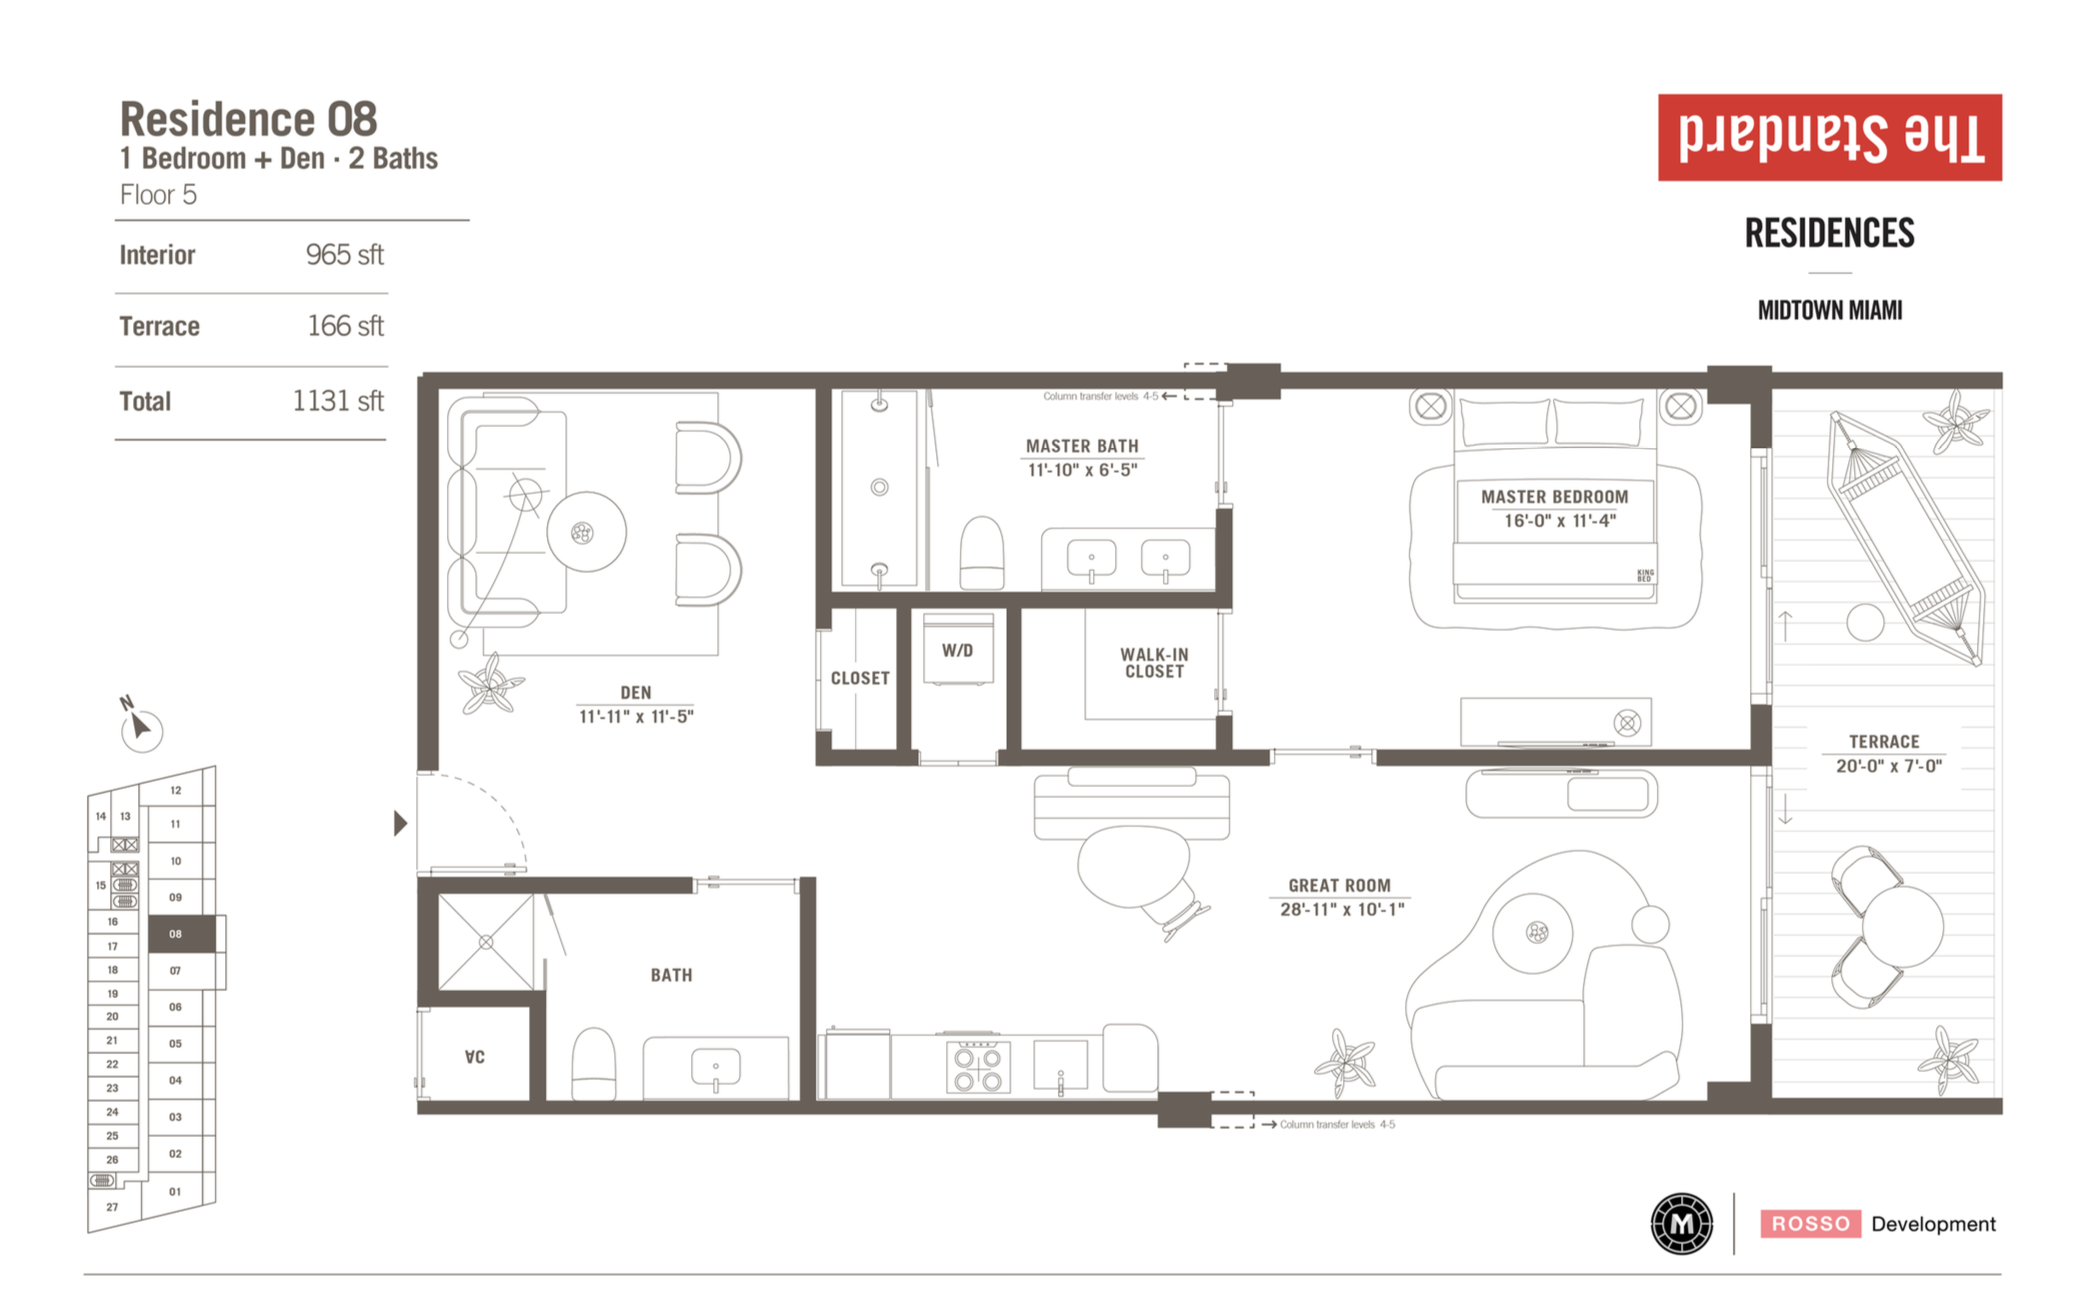 The Standard Residences | Residence 08 | 1 Be+ den / 2 Ba | 965 SF | Floor 5